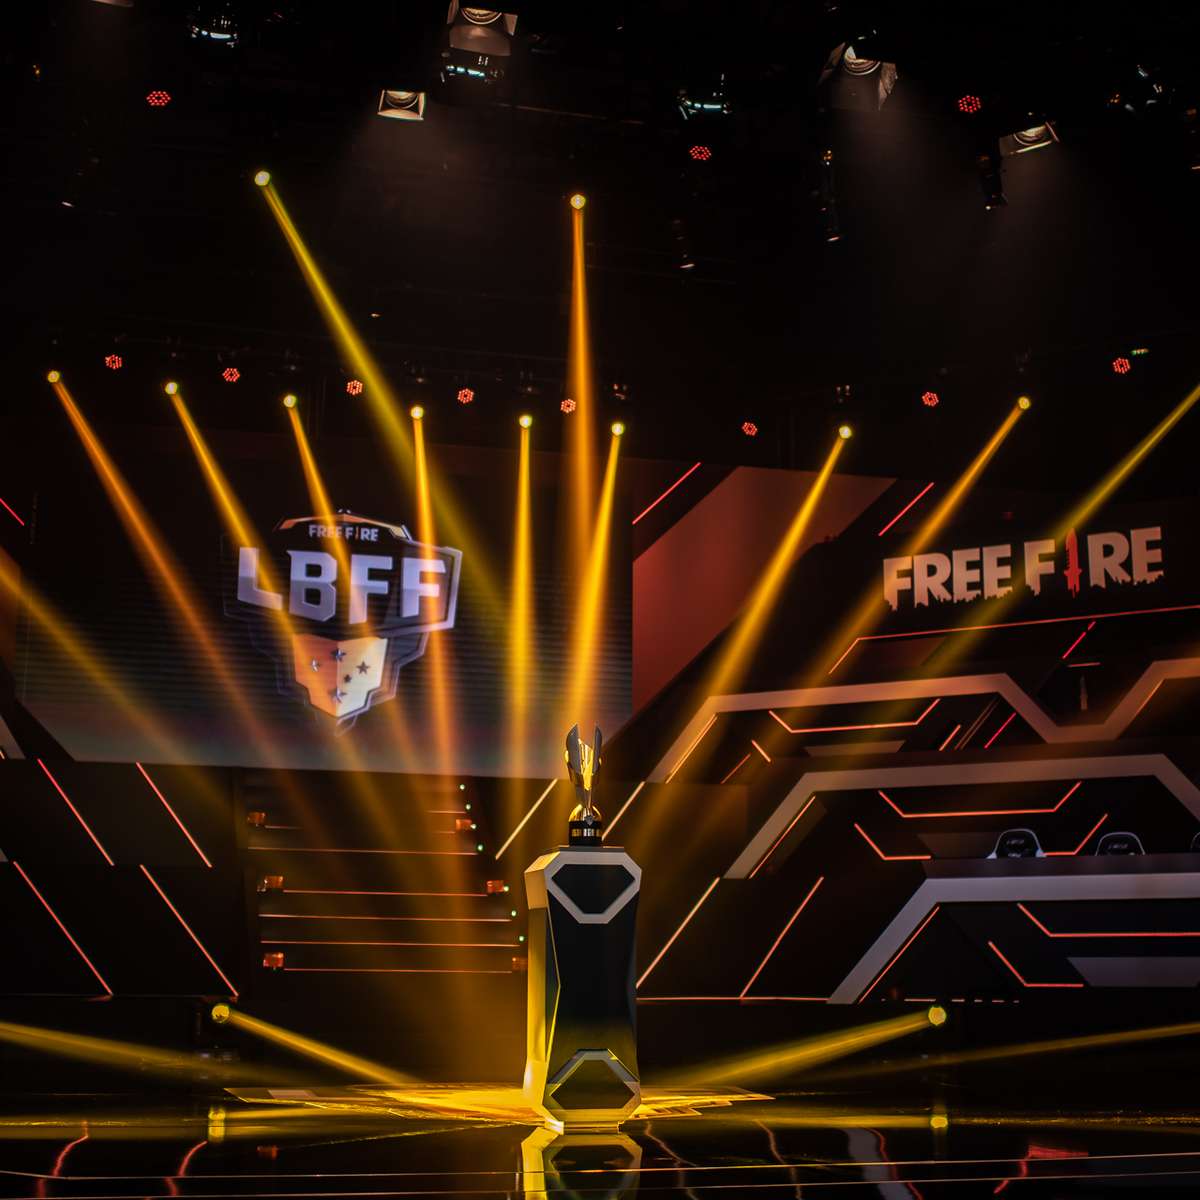 Free Fire foi segundo mais baixado do mundo no trimestre